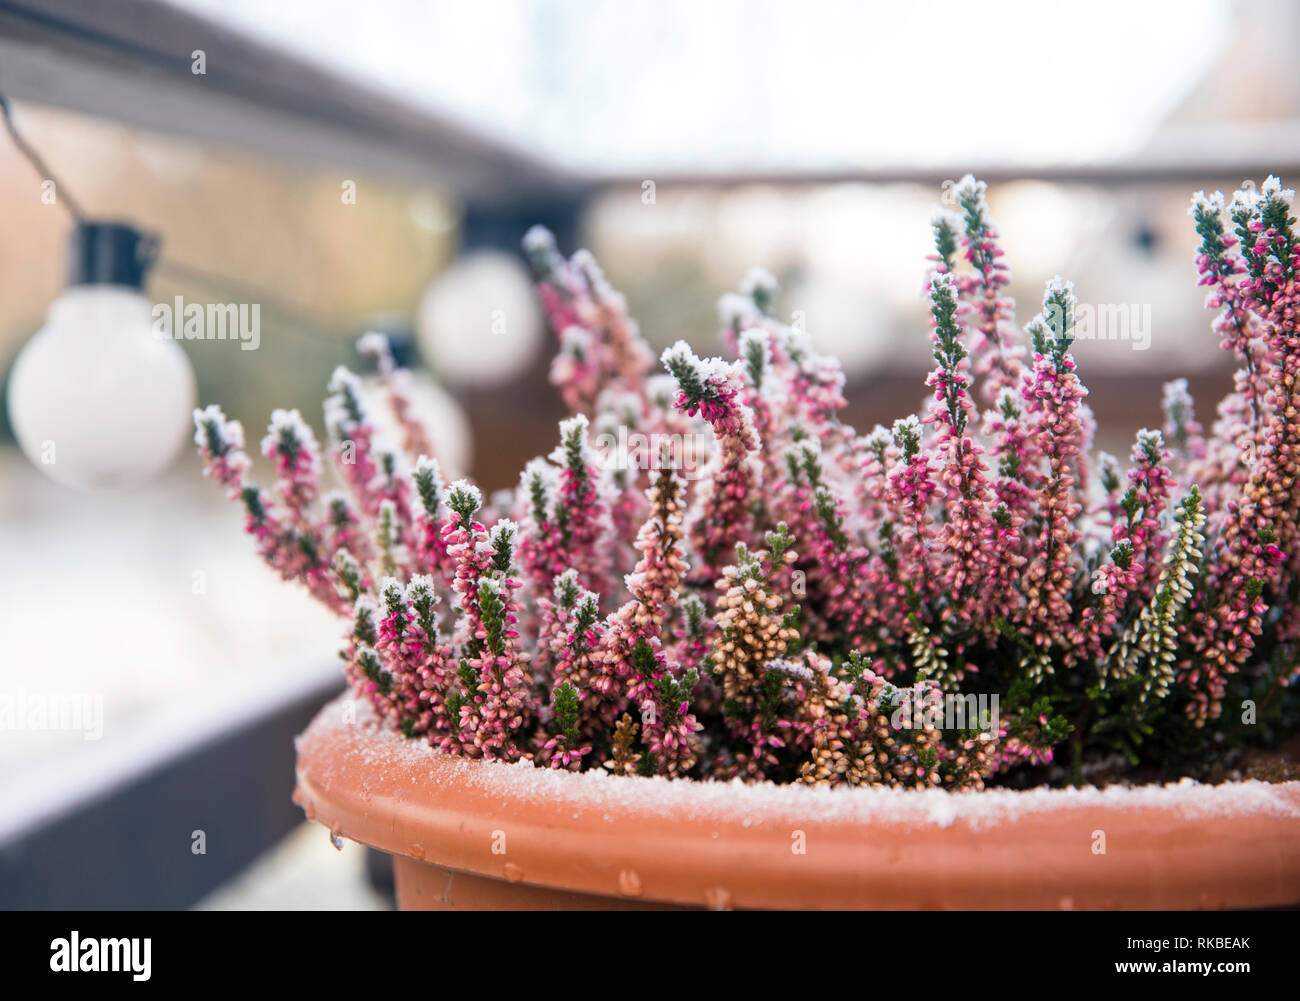 Rosa Heidekraut Blume wächst in Terracotta Farbe Garten Topf, draußen auf der Terrasse im Winter, bedeckt mit White Frost. Stockfoto